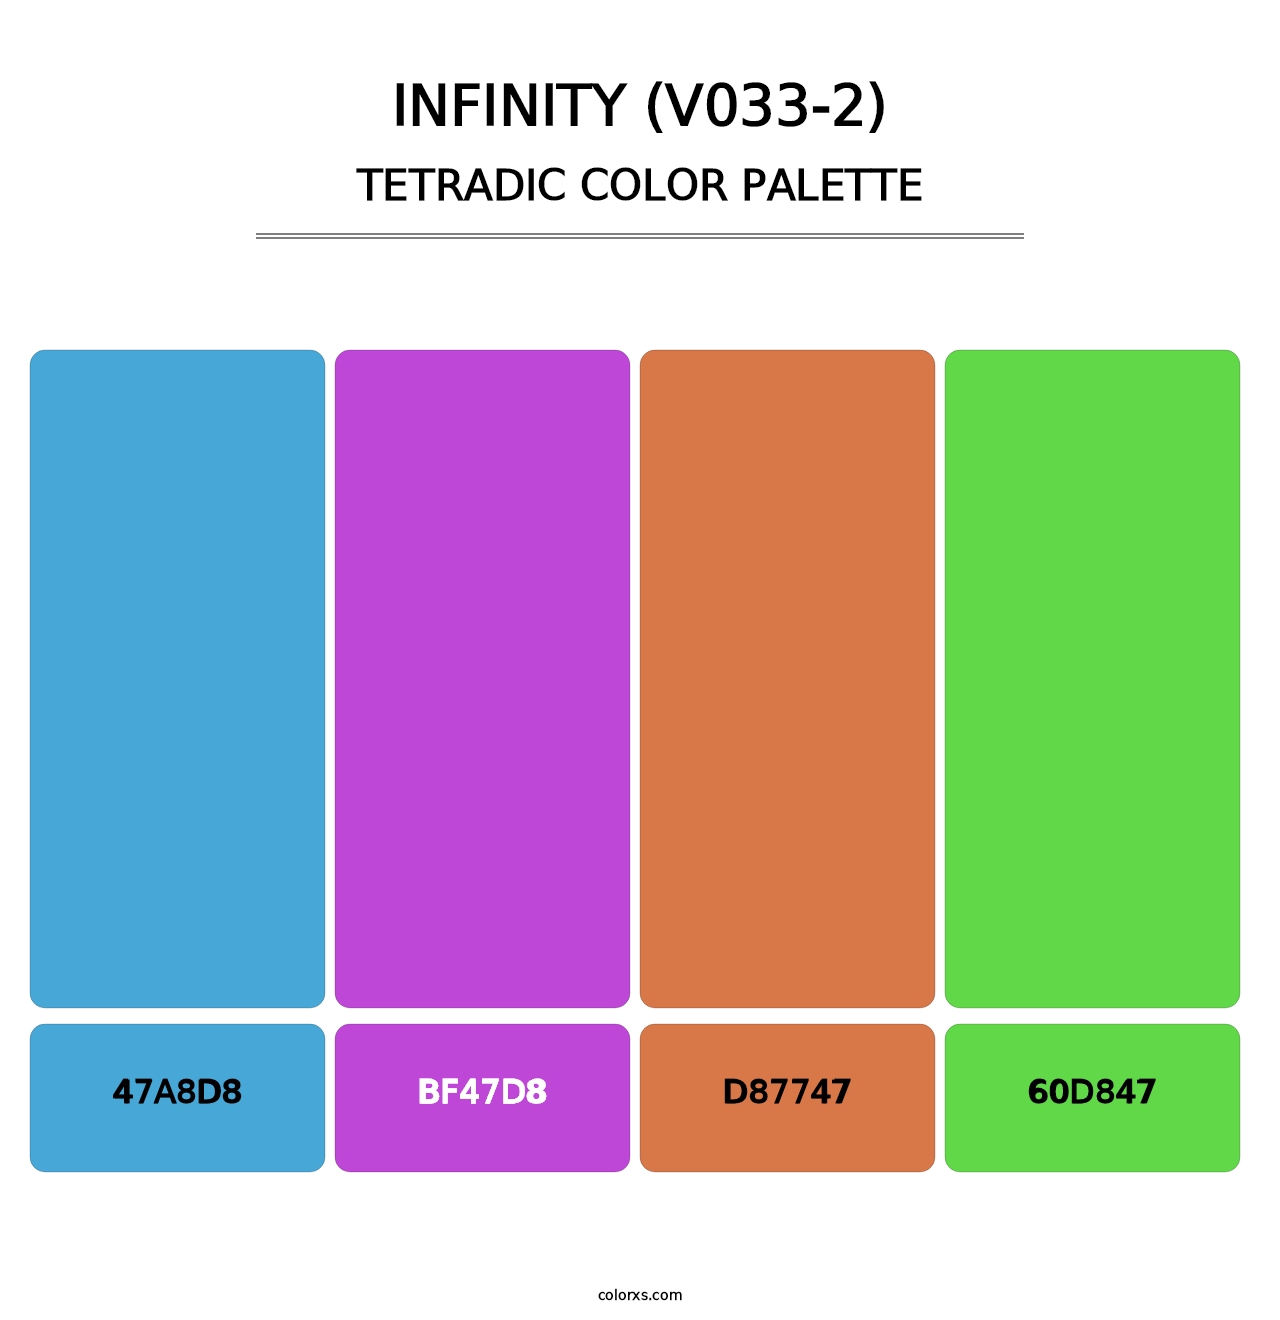 Infinity (V033-2) - Tetradic Color Palette